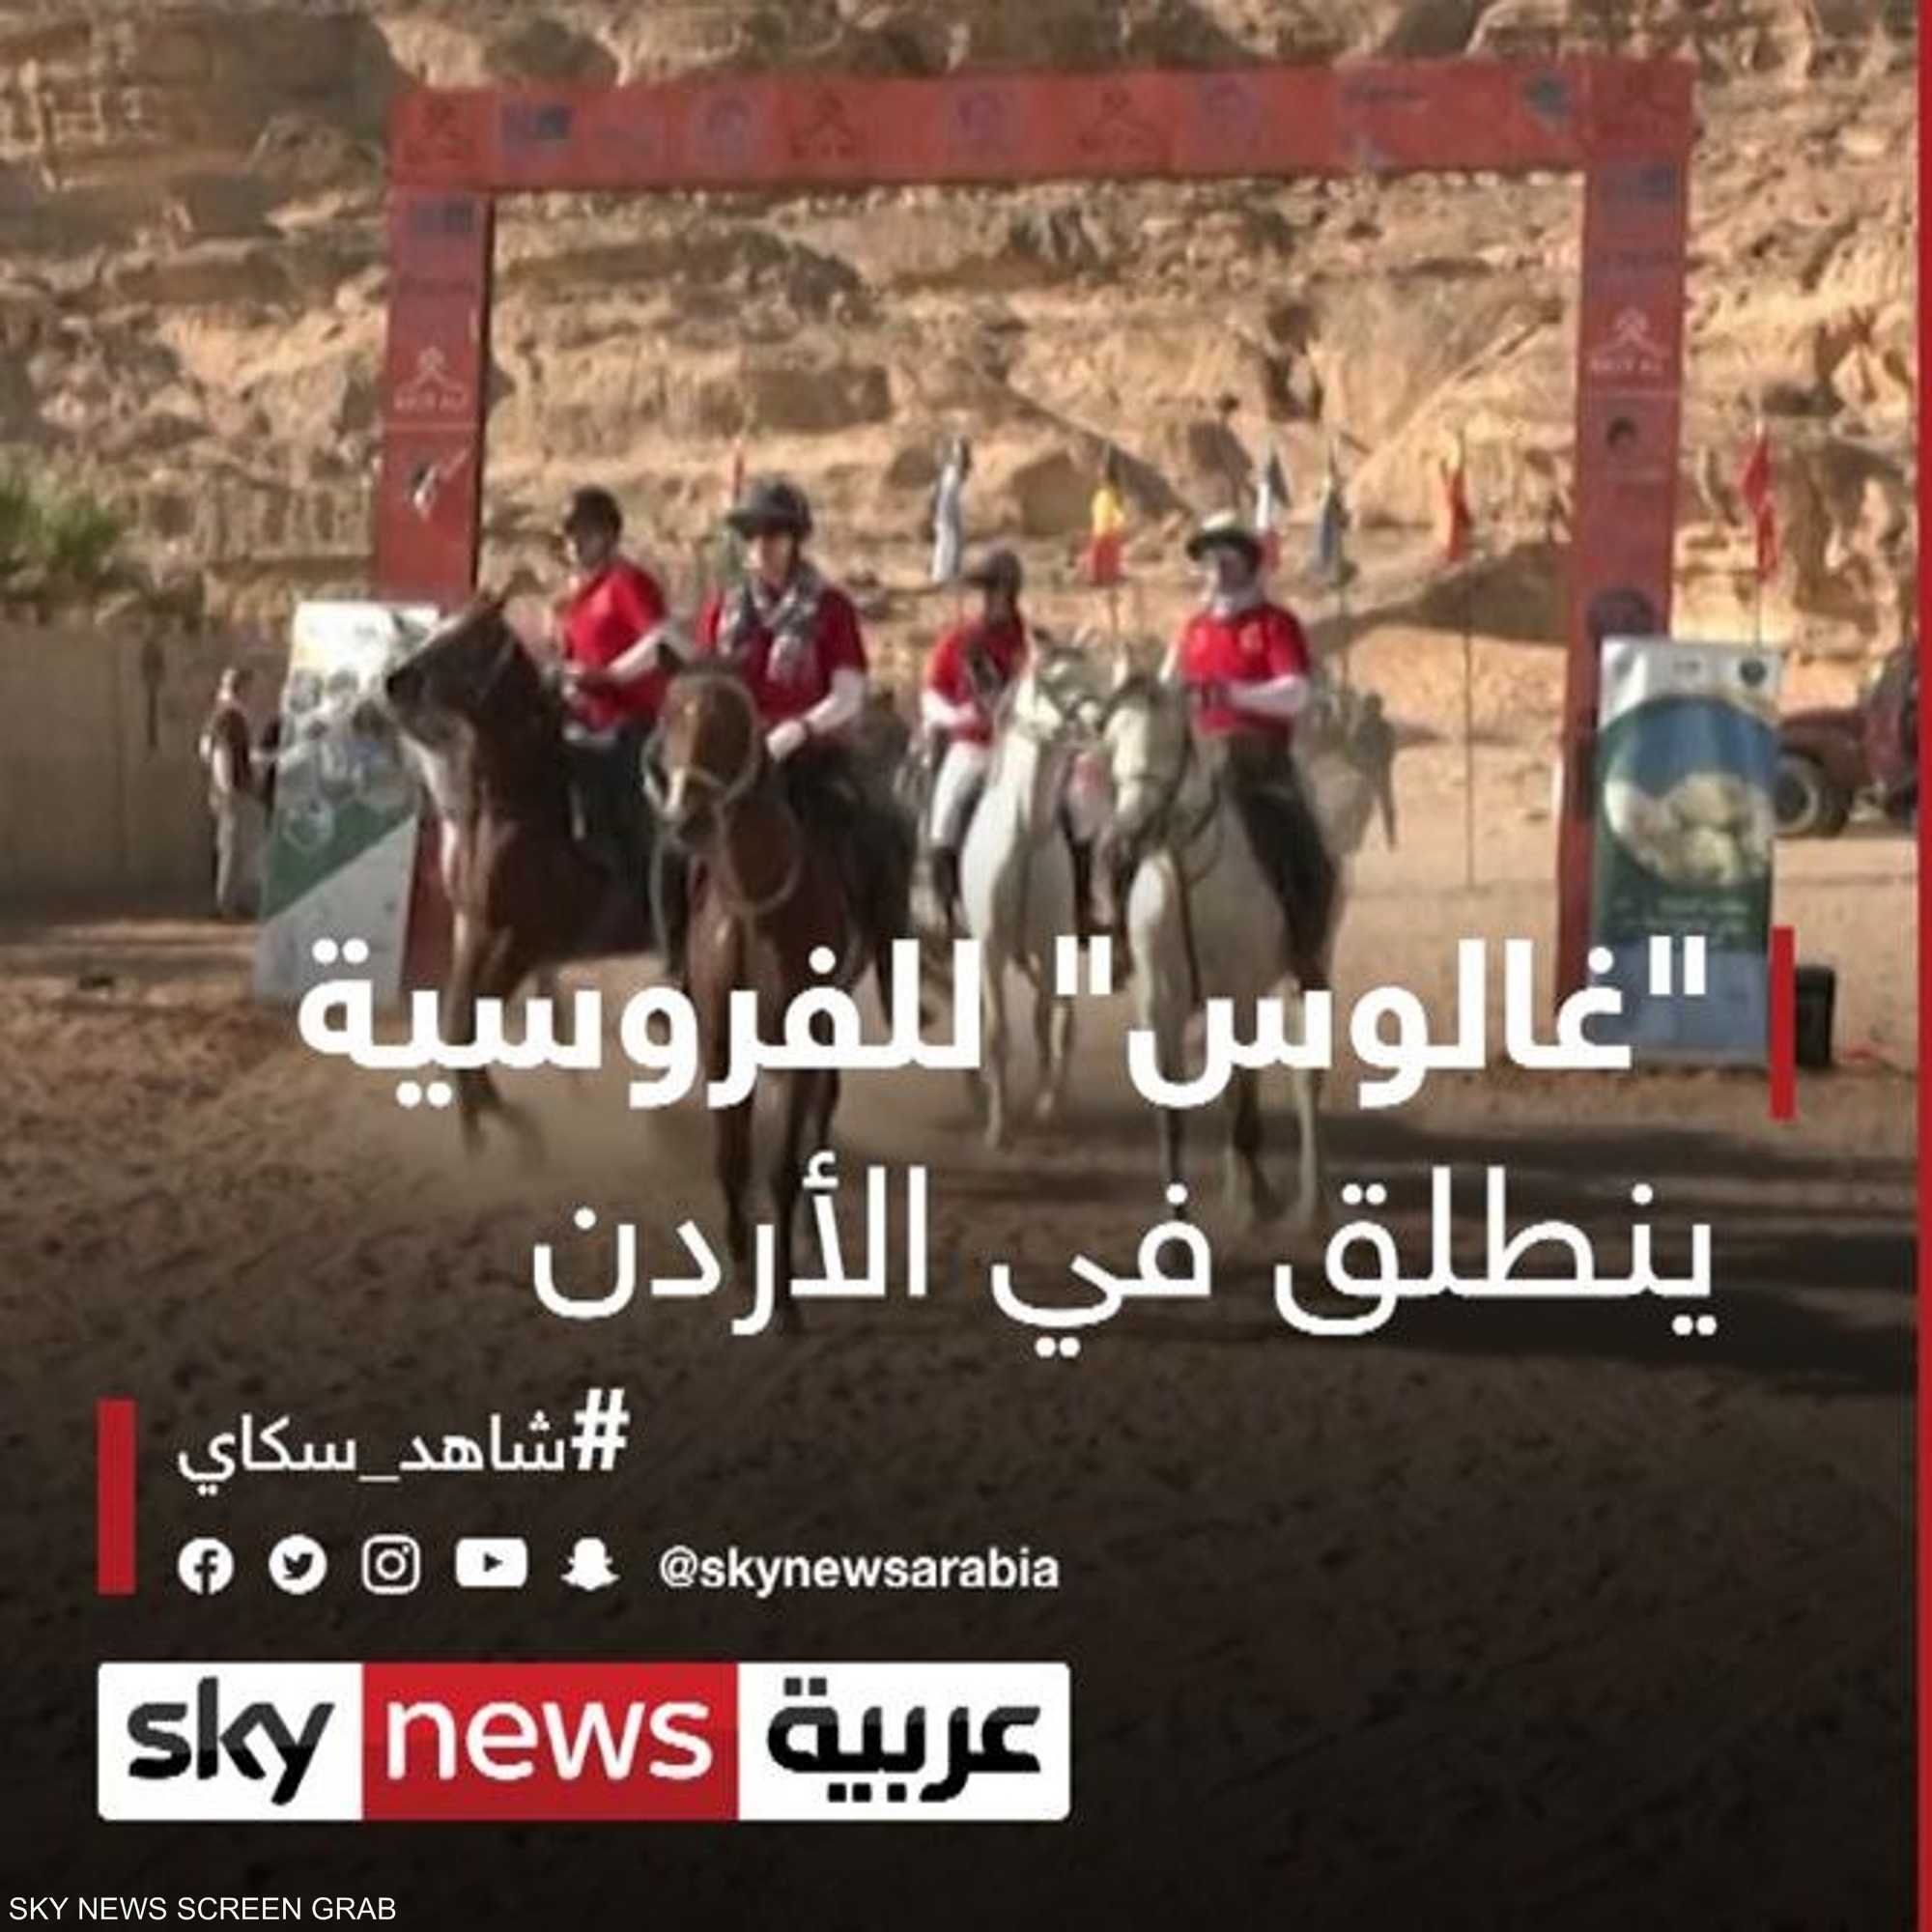 انطلاق سباق "غالوس" للفروسية والتحمل في الأردن